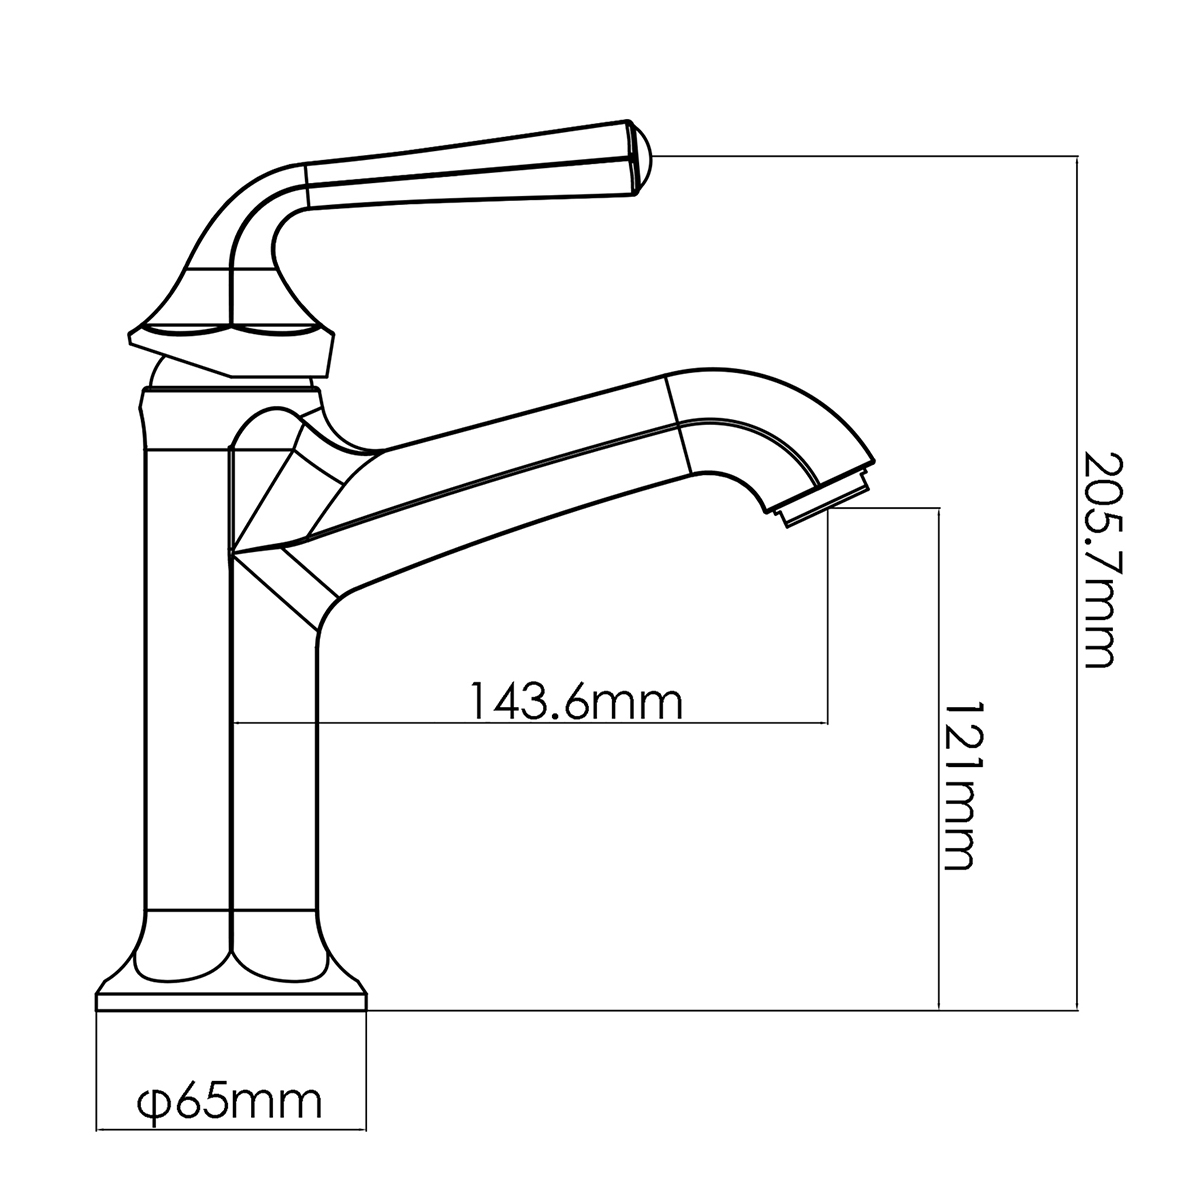 Design moderno de corte de diamante com uma alça polida cromada antiga torneira para pia de banheiro com CUPC